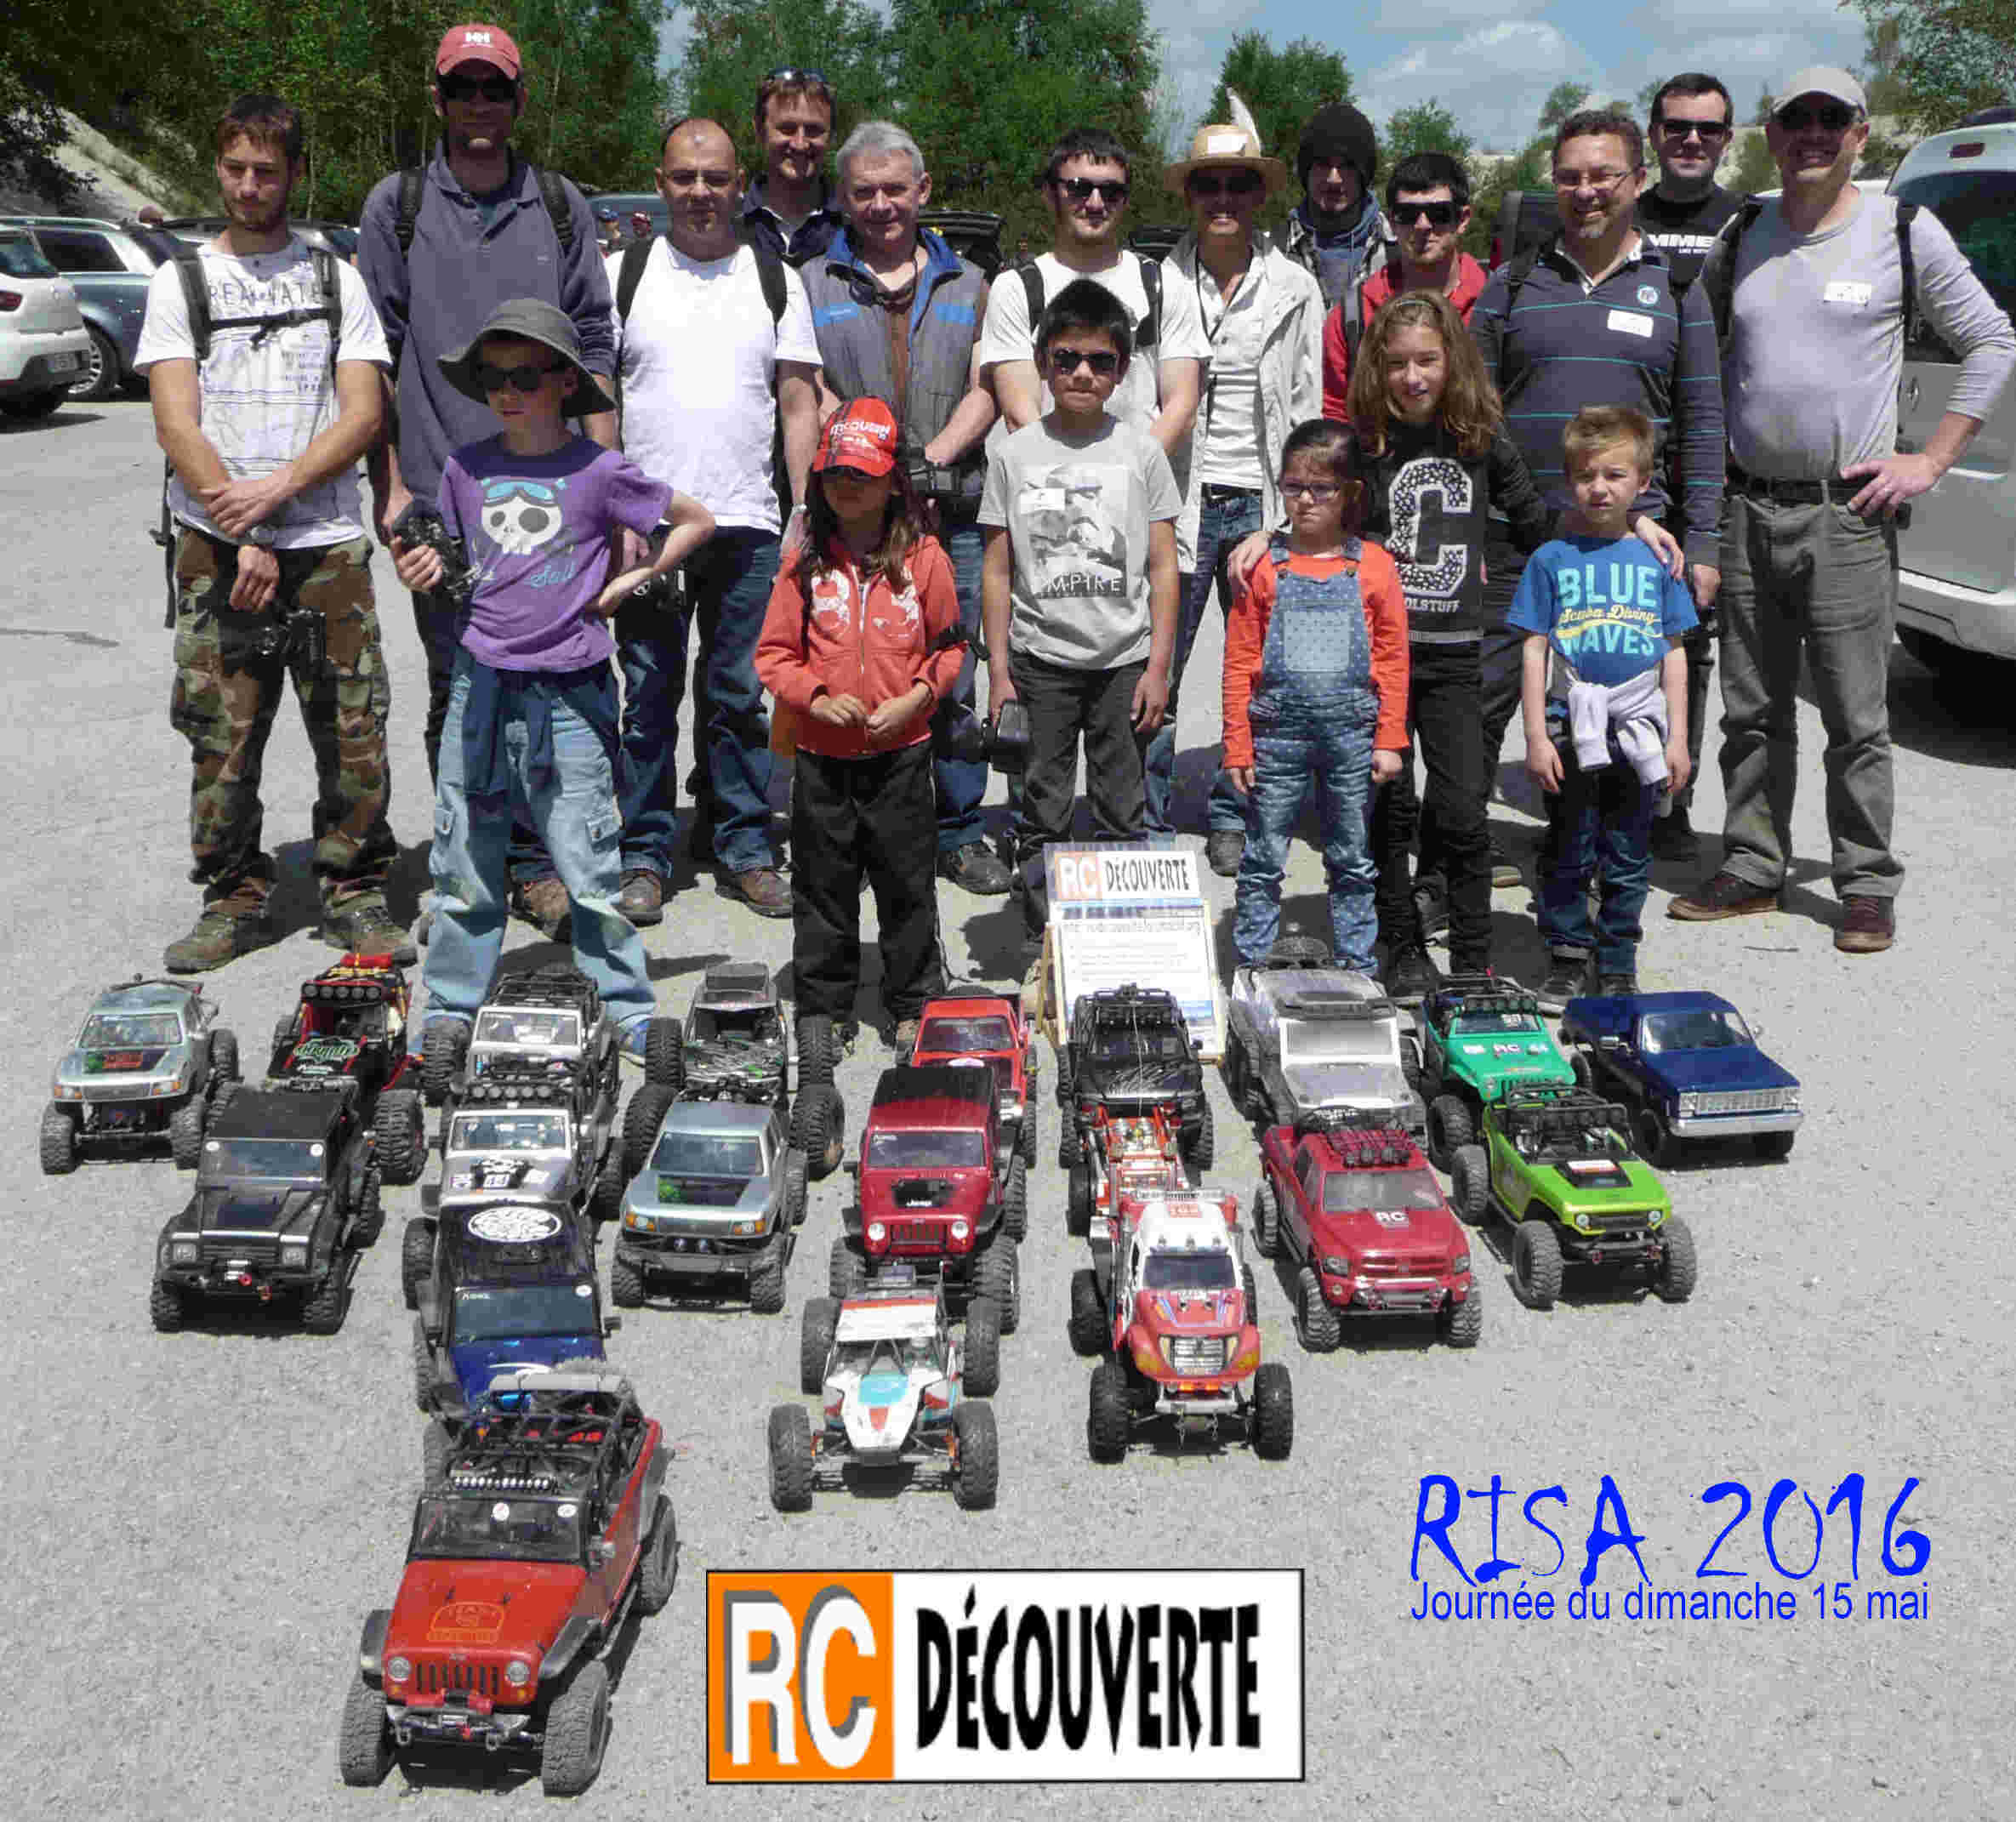 Grand Rassemblement Scale Trial et Crawler : RISA 7 du 3 au 4 juin 2017 - Abbaretz (44) Loire Atlantique dans le Grand Ouest - France Equipe10